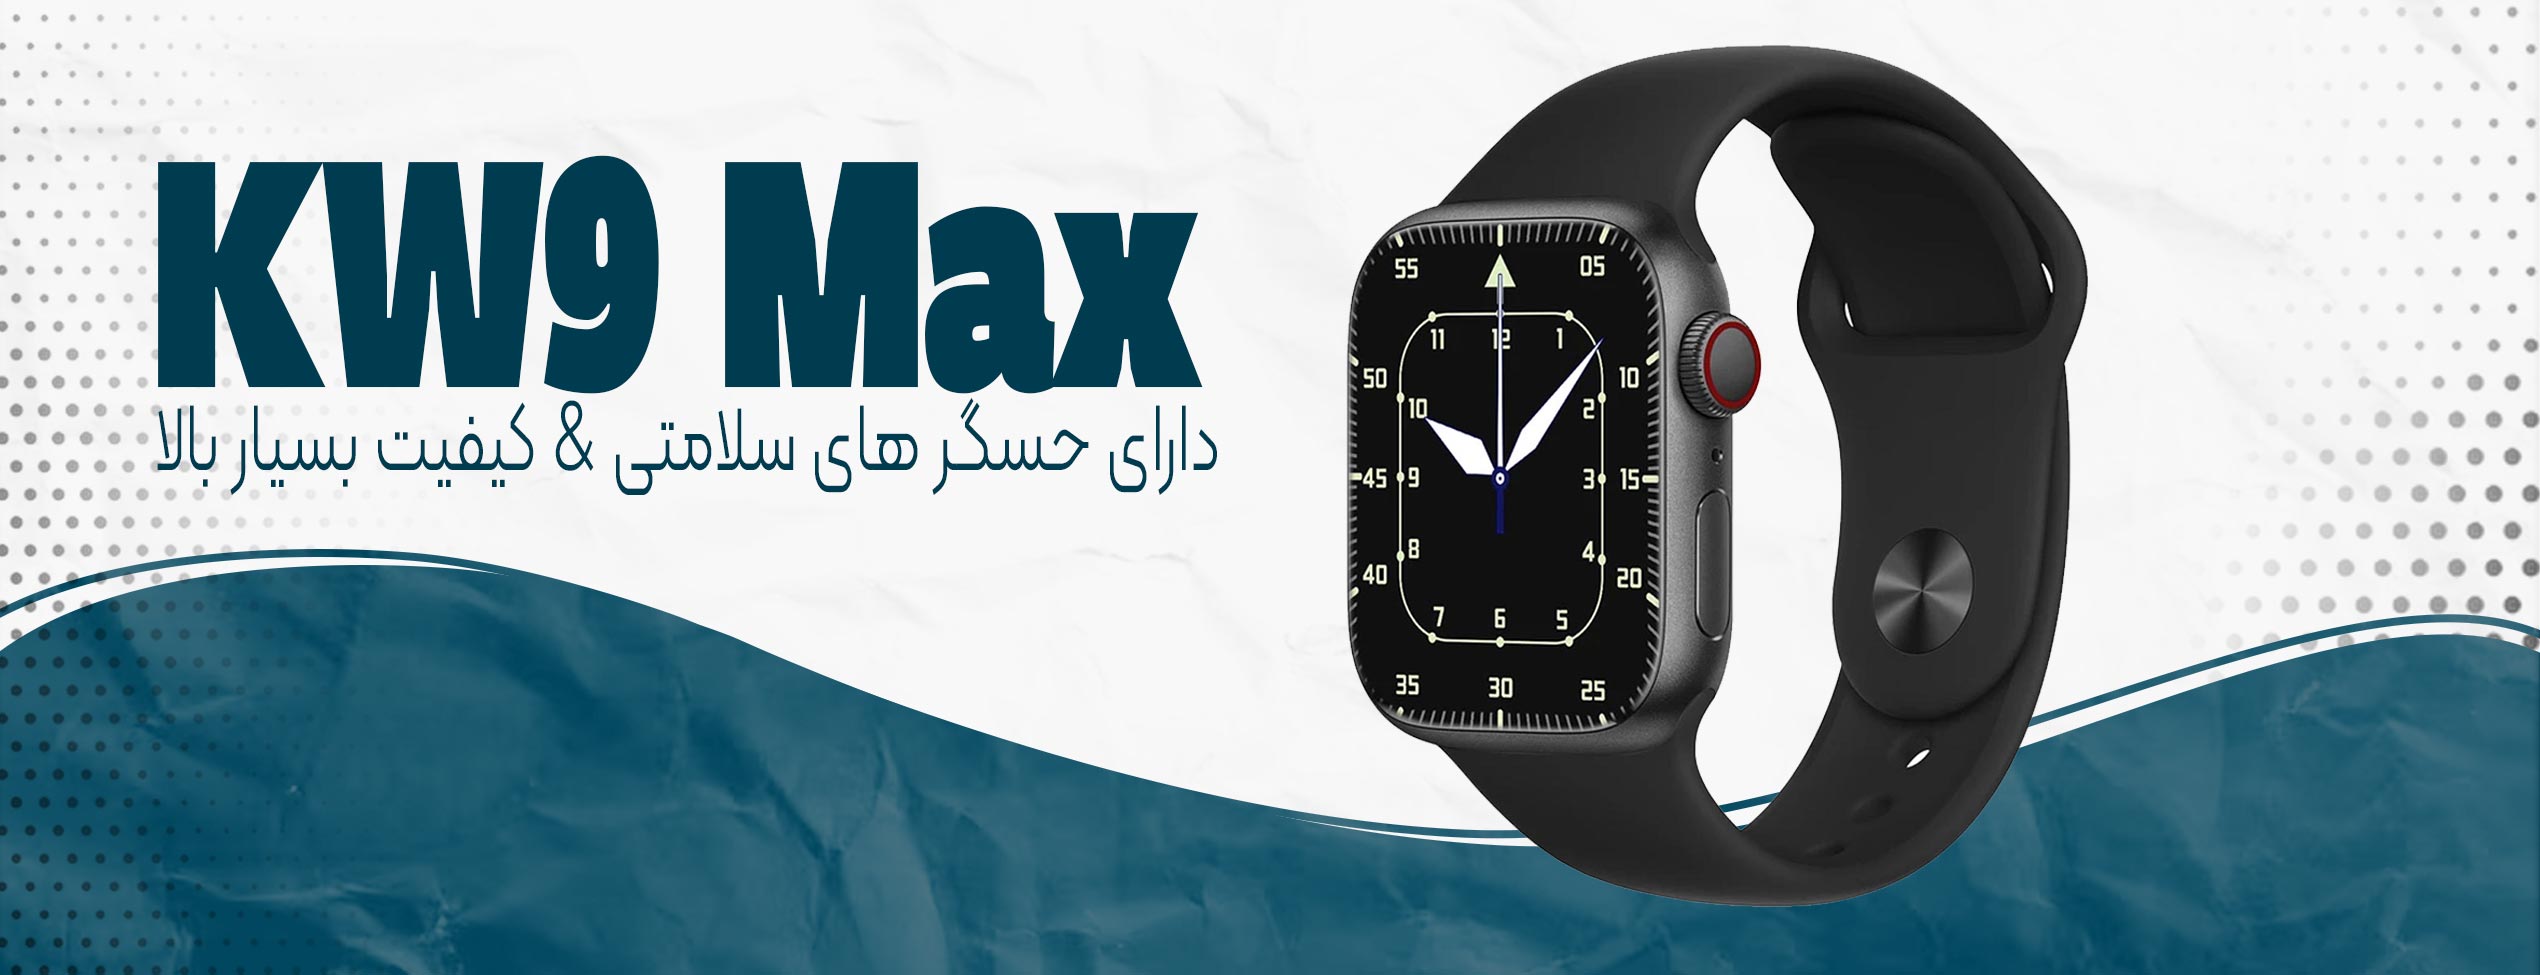 ساعت هوشمند KW9 Max